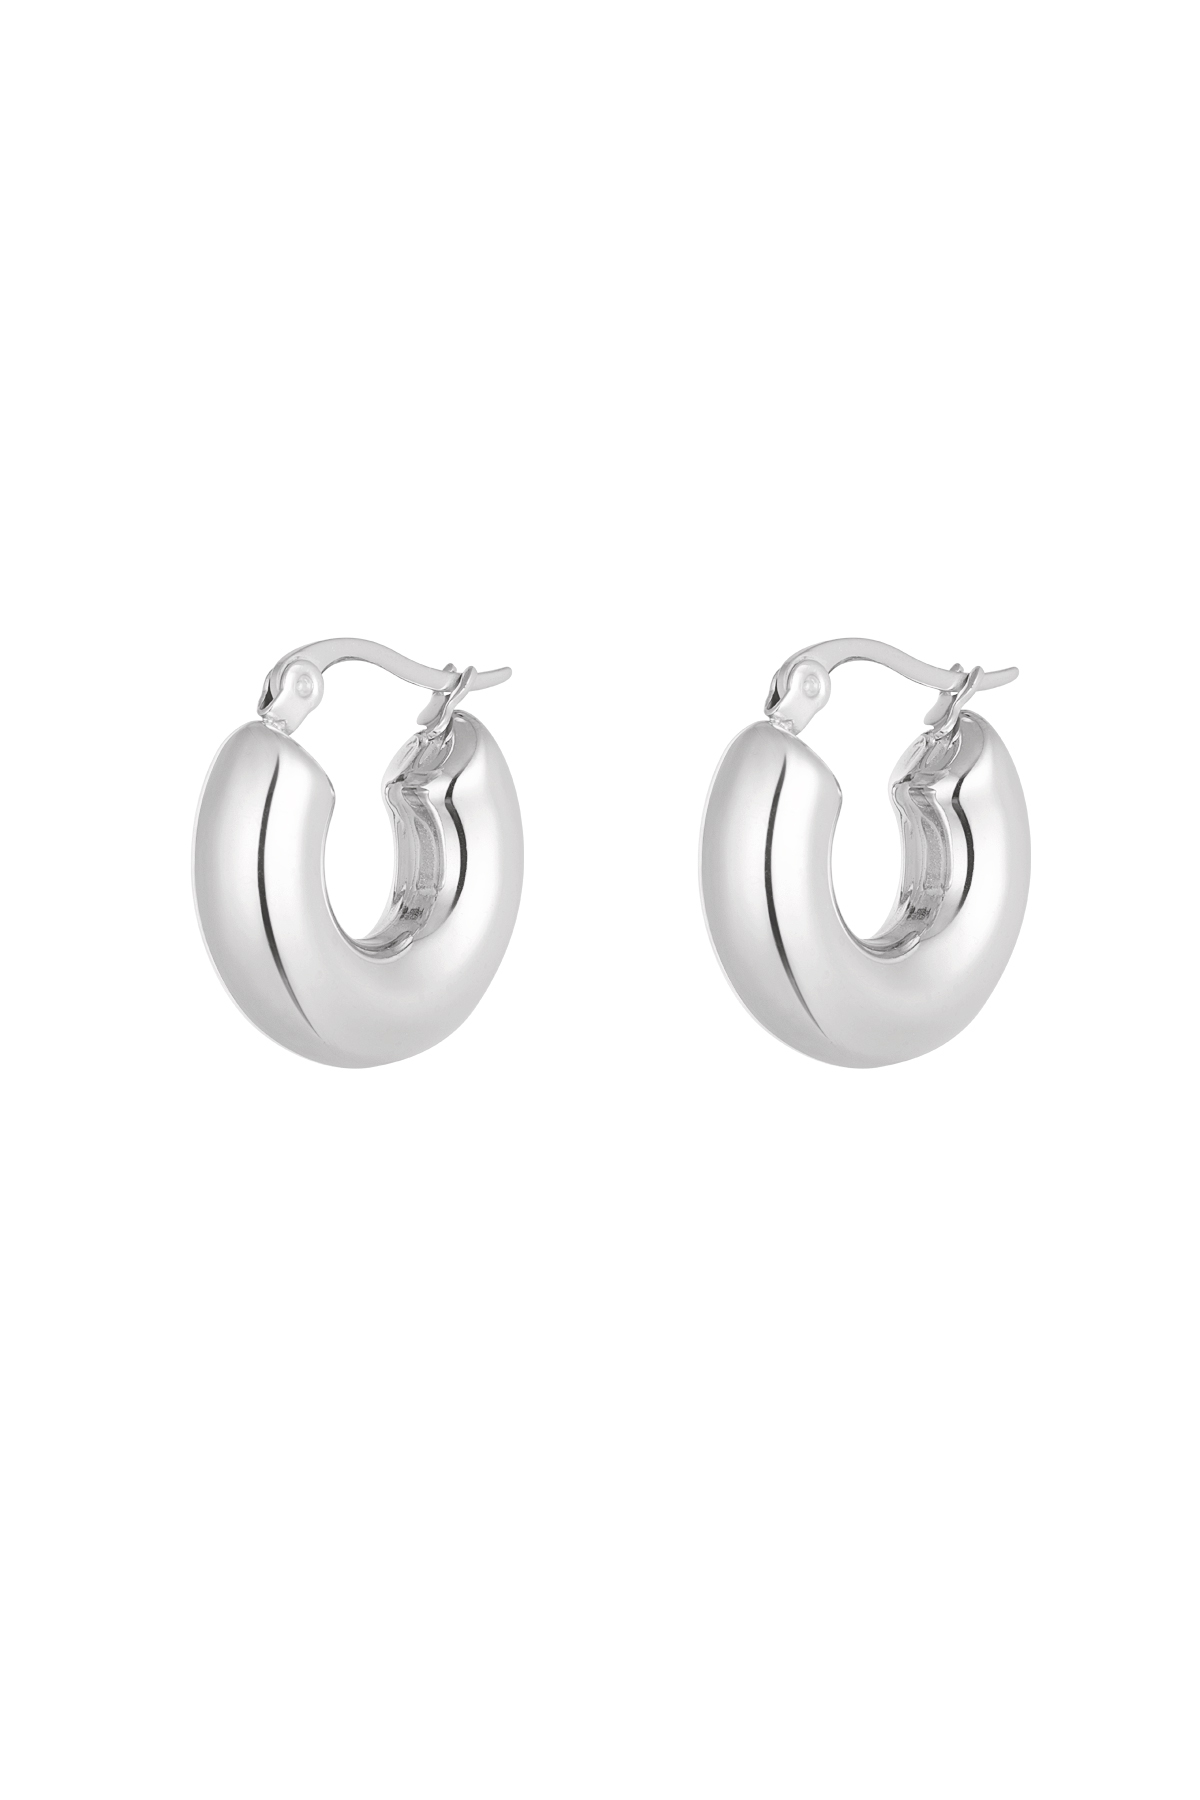 Earrings aesthetic basic - silver h5 